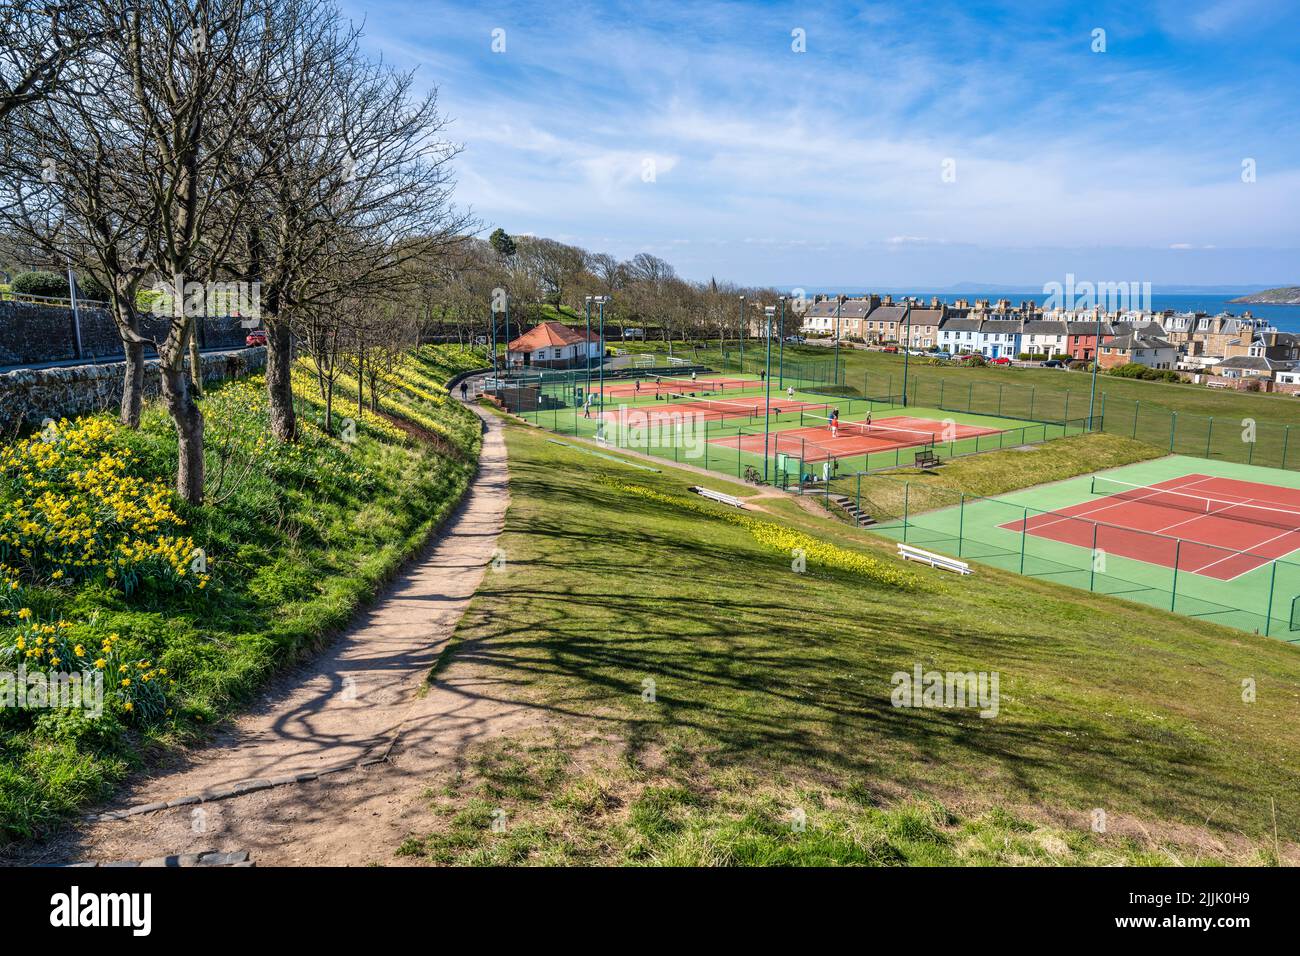 Vue sur les jonquilles printanières à côté du sentier public menant au North Berwick tennis Club dans la ville côtière de North Berwick à East Lothian, Écosse, Royaume-Uni Banque D'Images